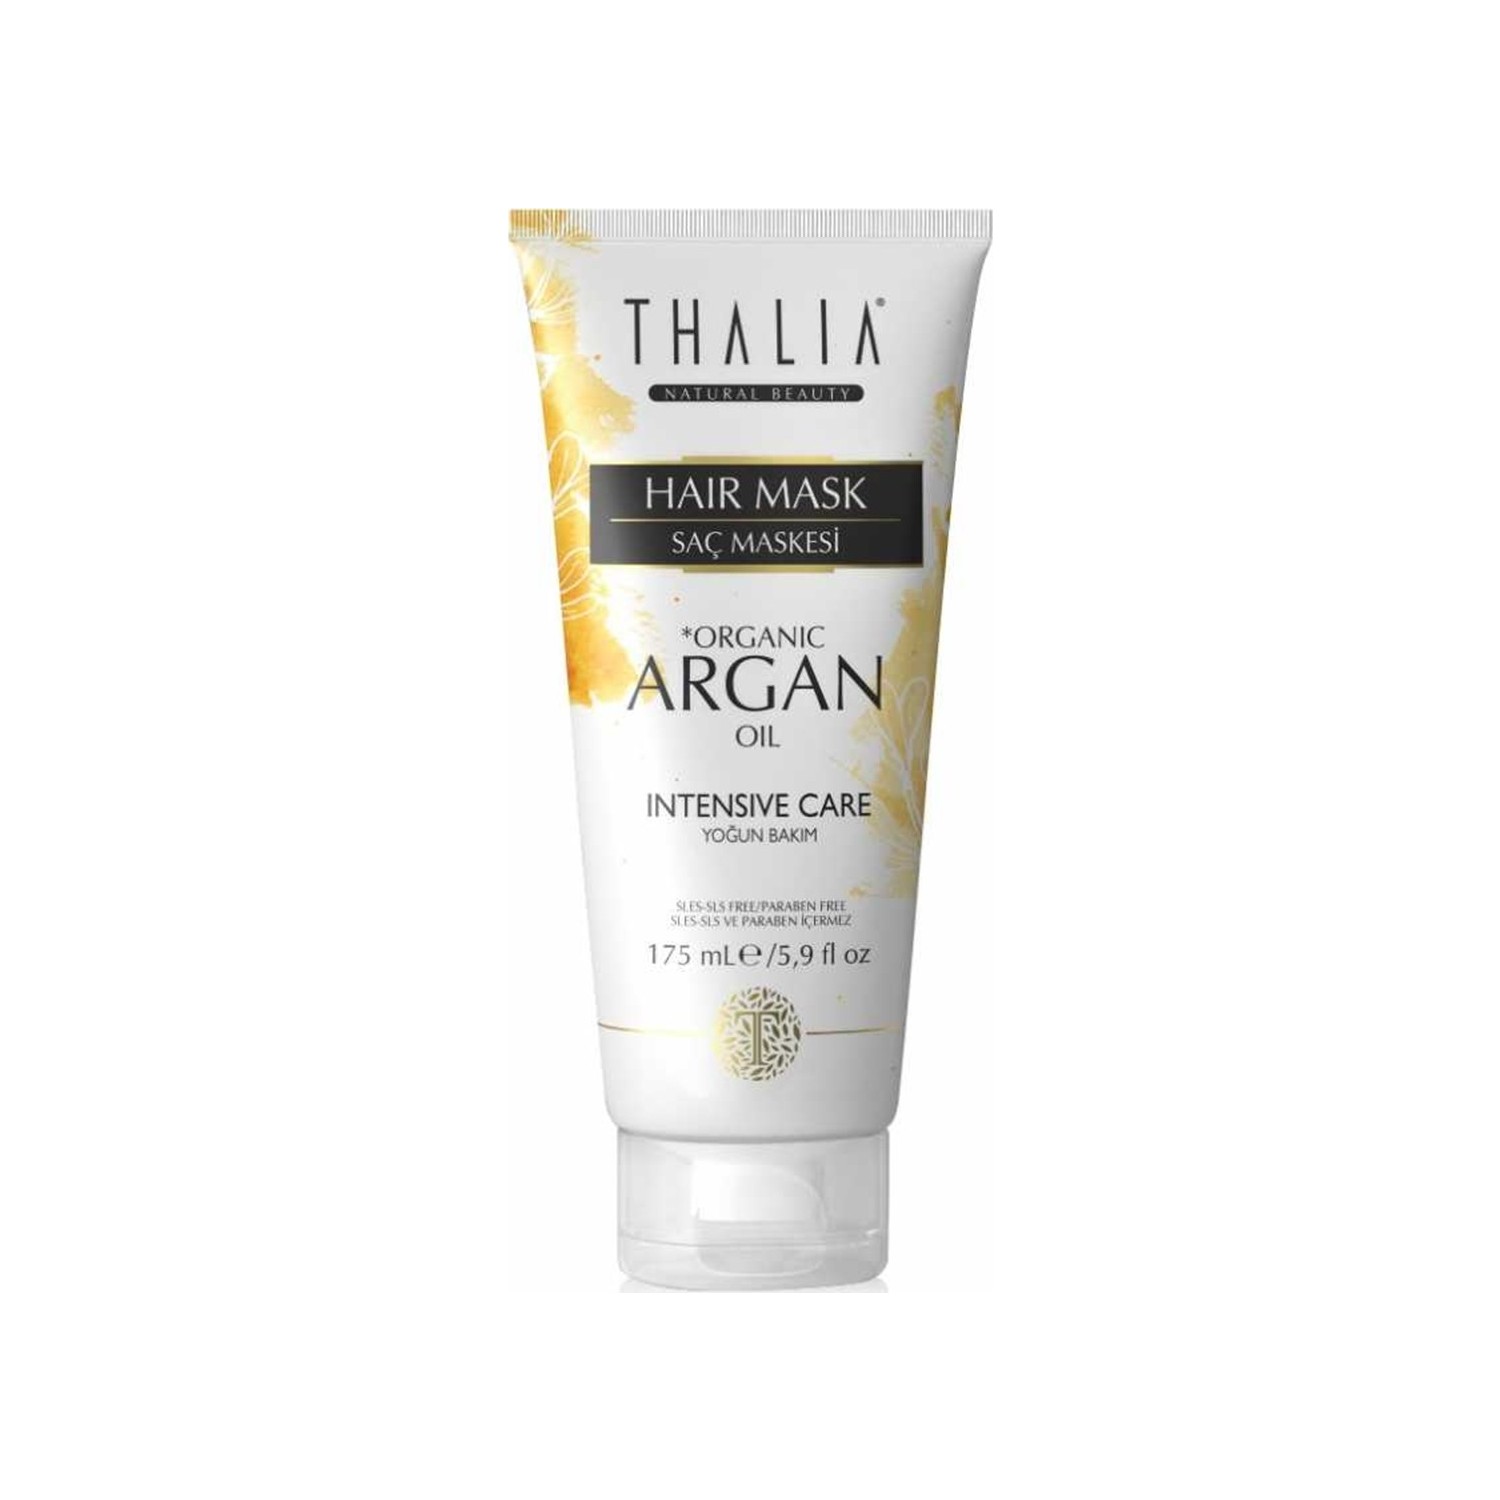 Маска для ухода за волосами Thalia с органическим аргановым маслом, 175 мл маска для ухода за волосами thalia sakura 2 тюбика по 175 мл